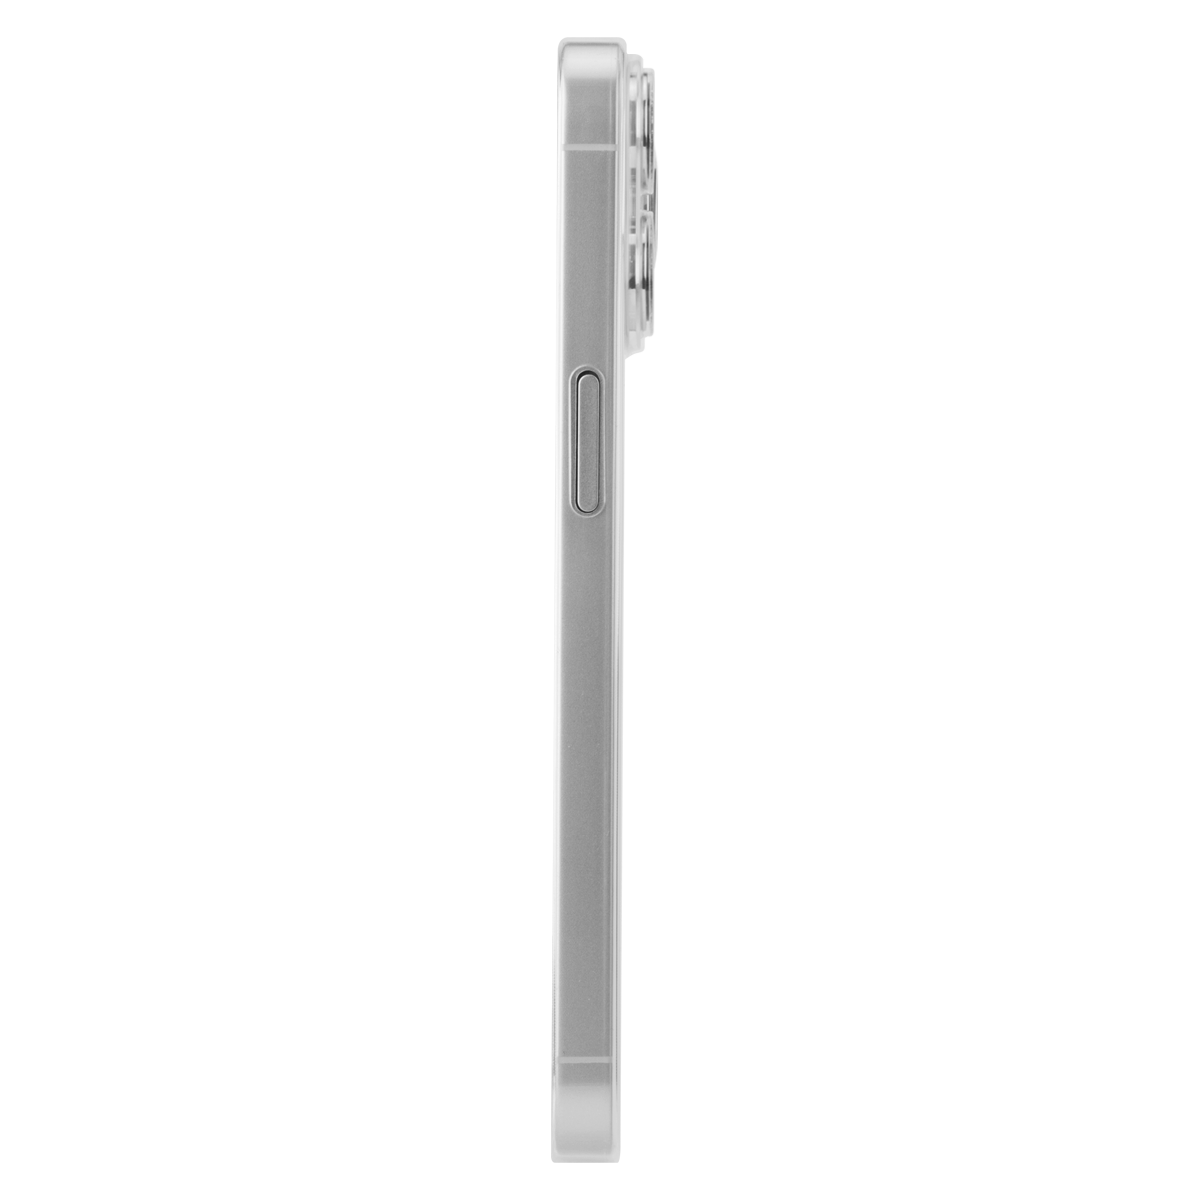 Iphone 14 Pro Max Case - Slim Steel Edge Transparent Cover